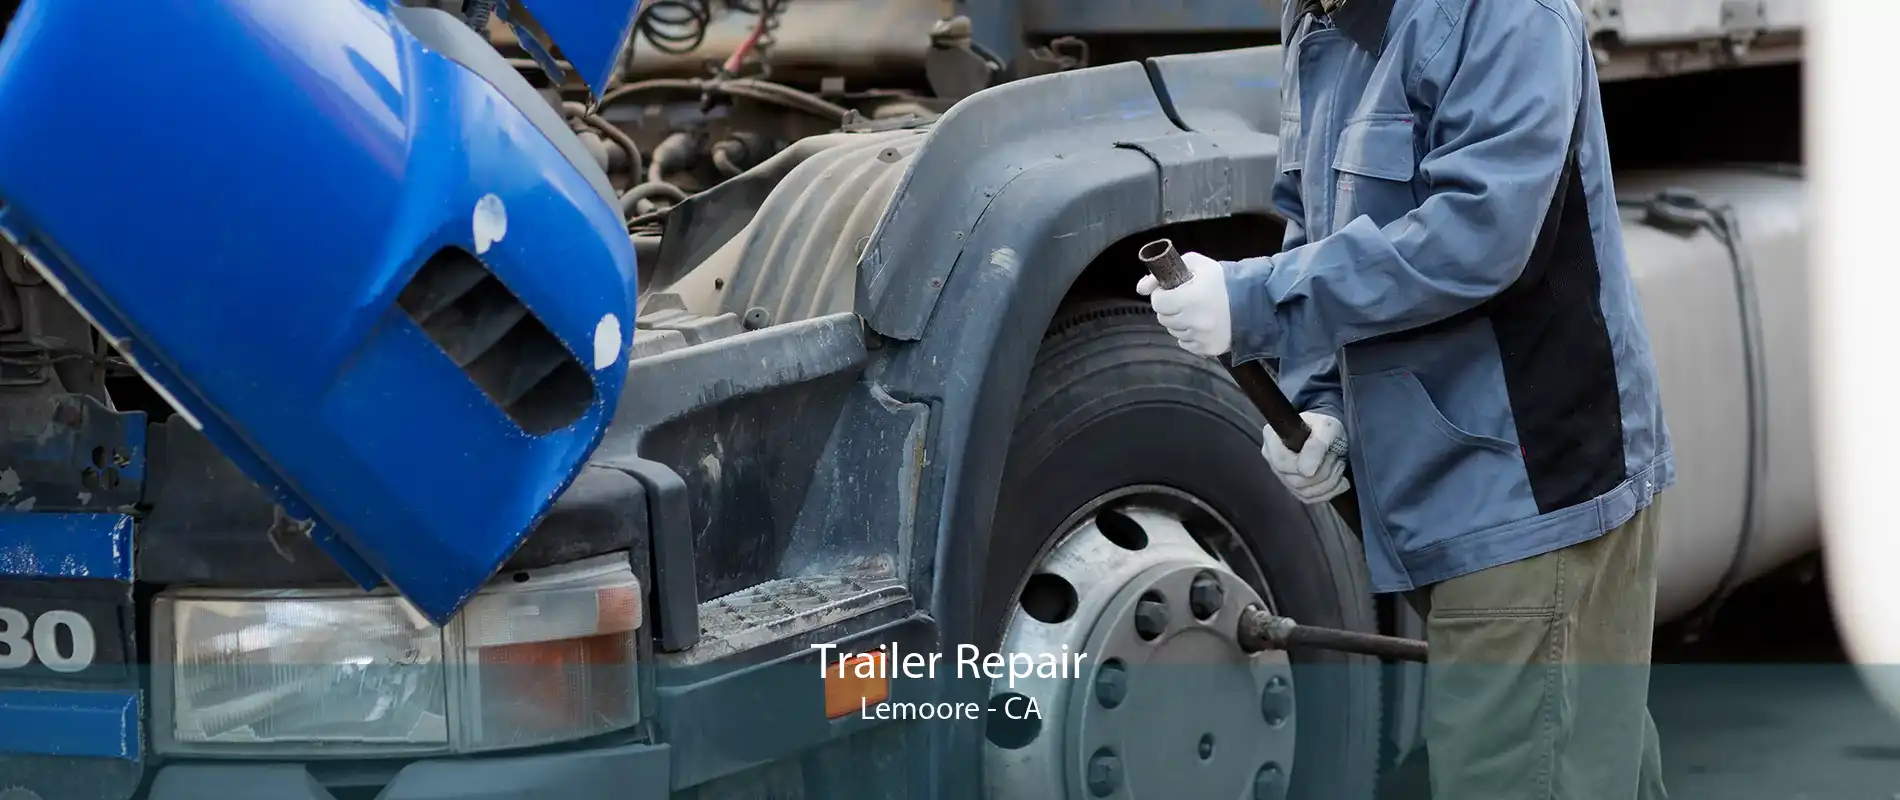 Trailer Repair Lemoore - CA